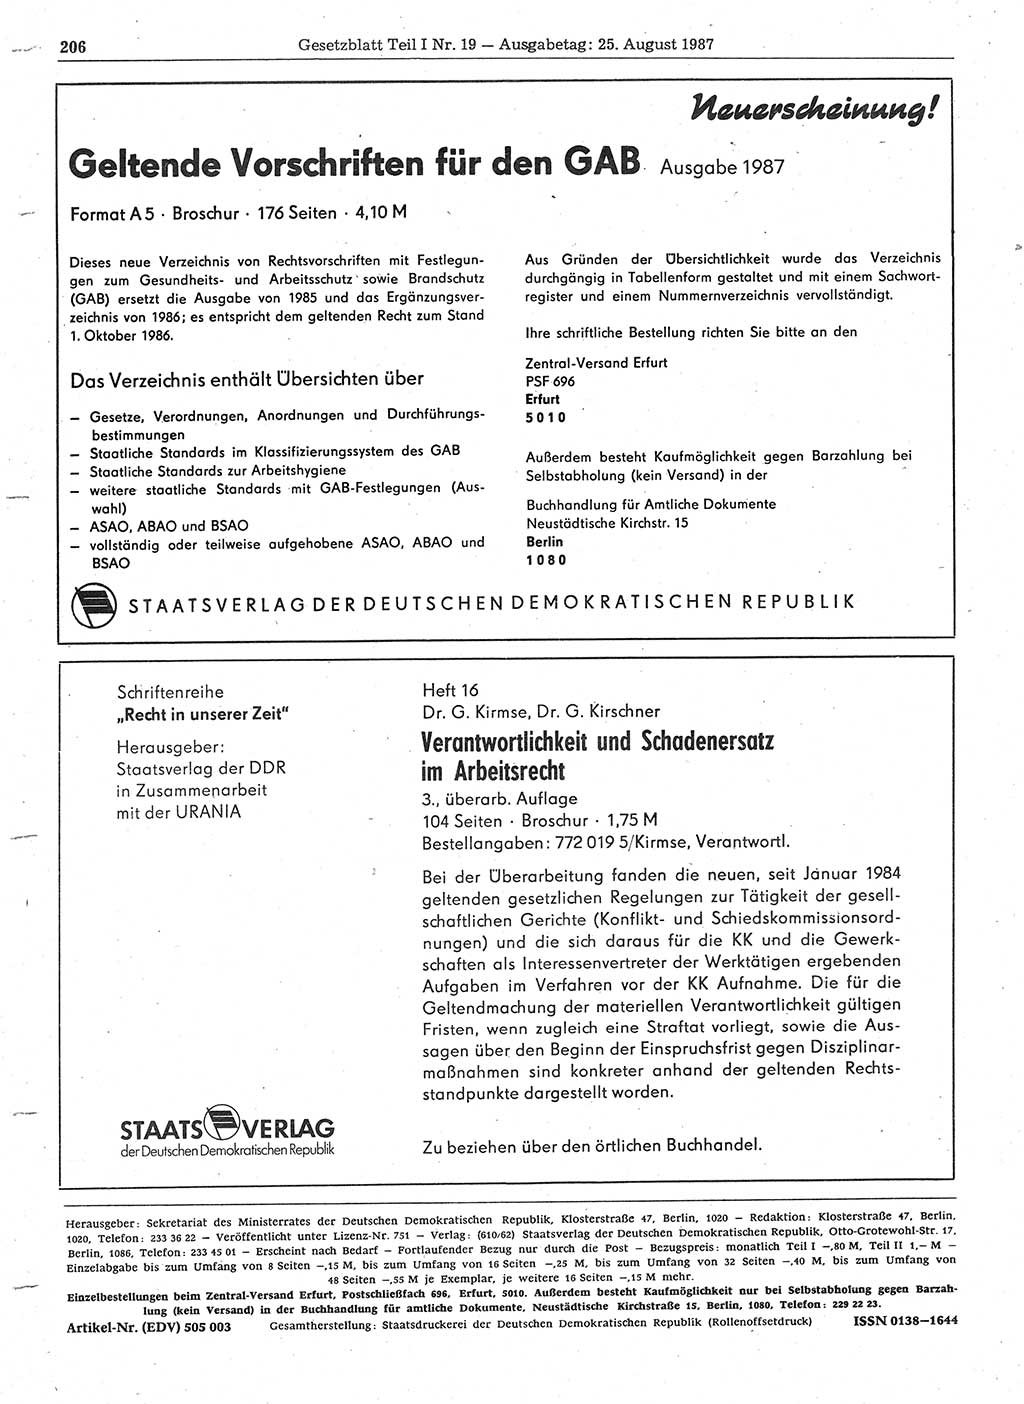 Gesetzblatt (GBl.) der Deutschen Demokratischen Republik (DDR) Teil Ⅰ 1987, Seite 206 (GBl. DDR Ⅰ 1987, S. 206)